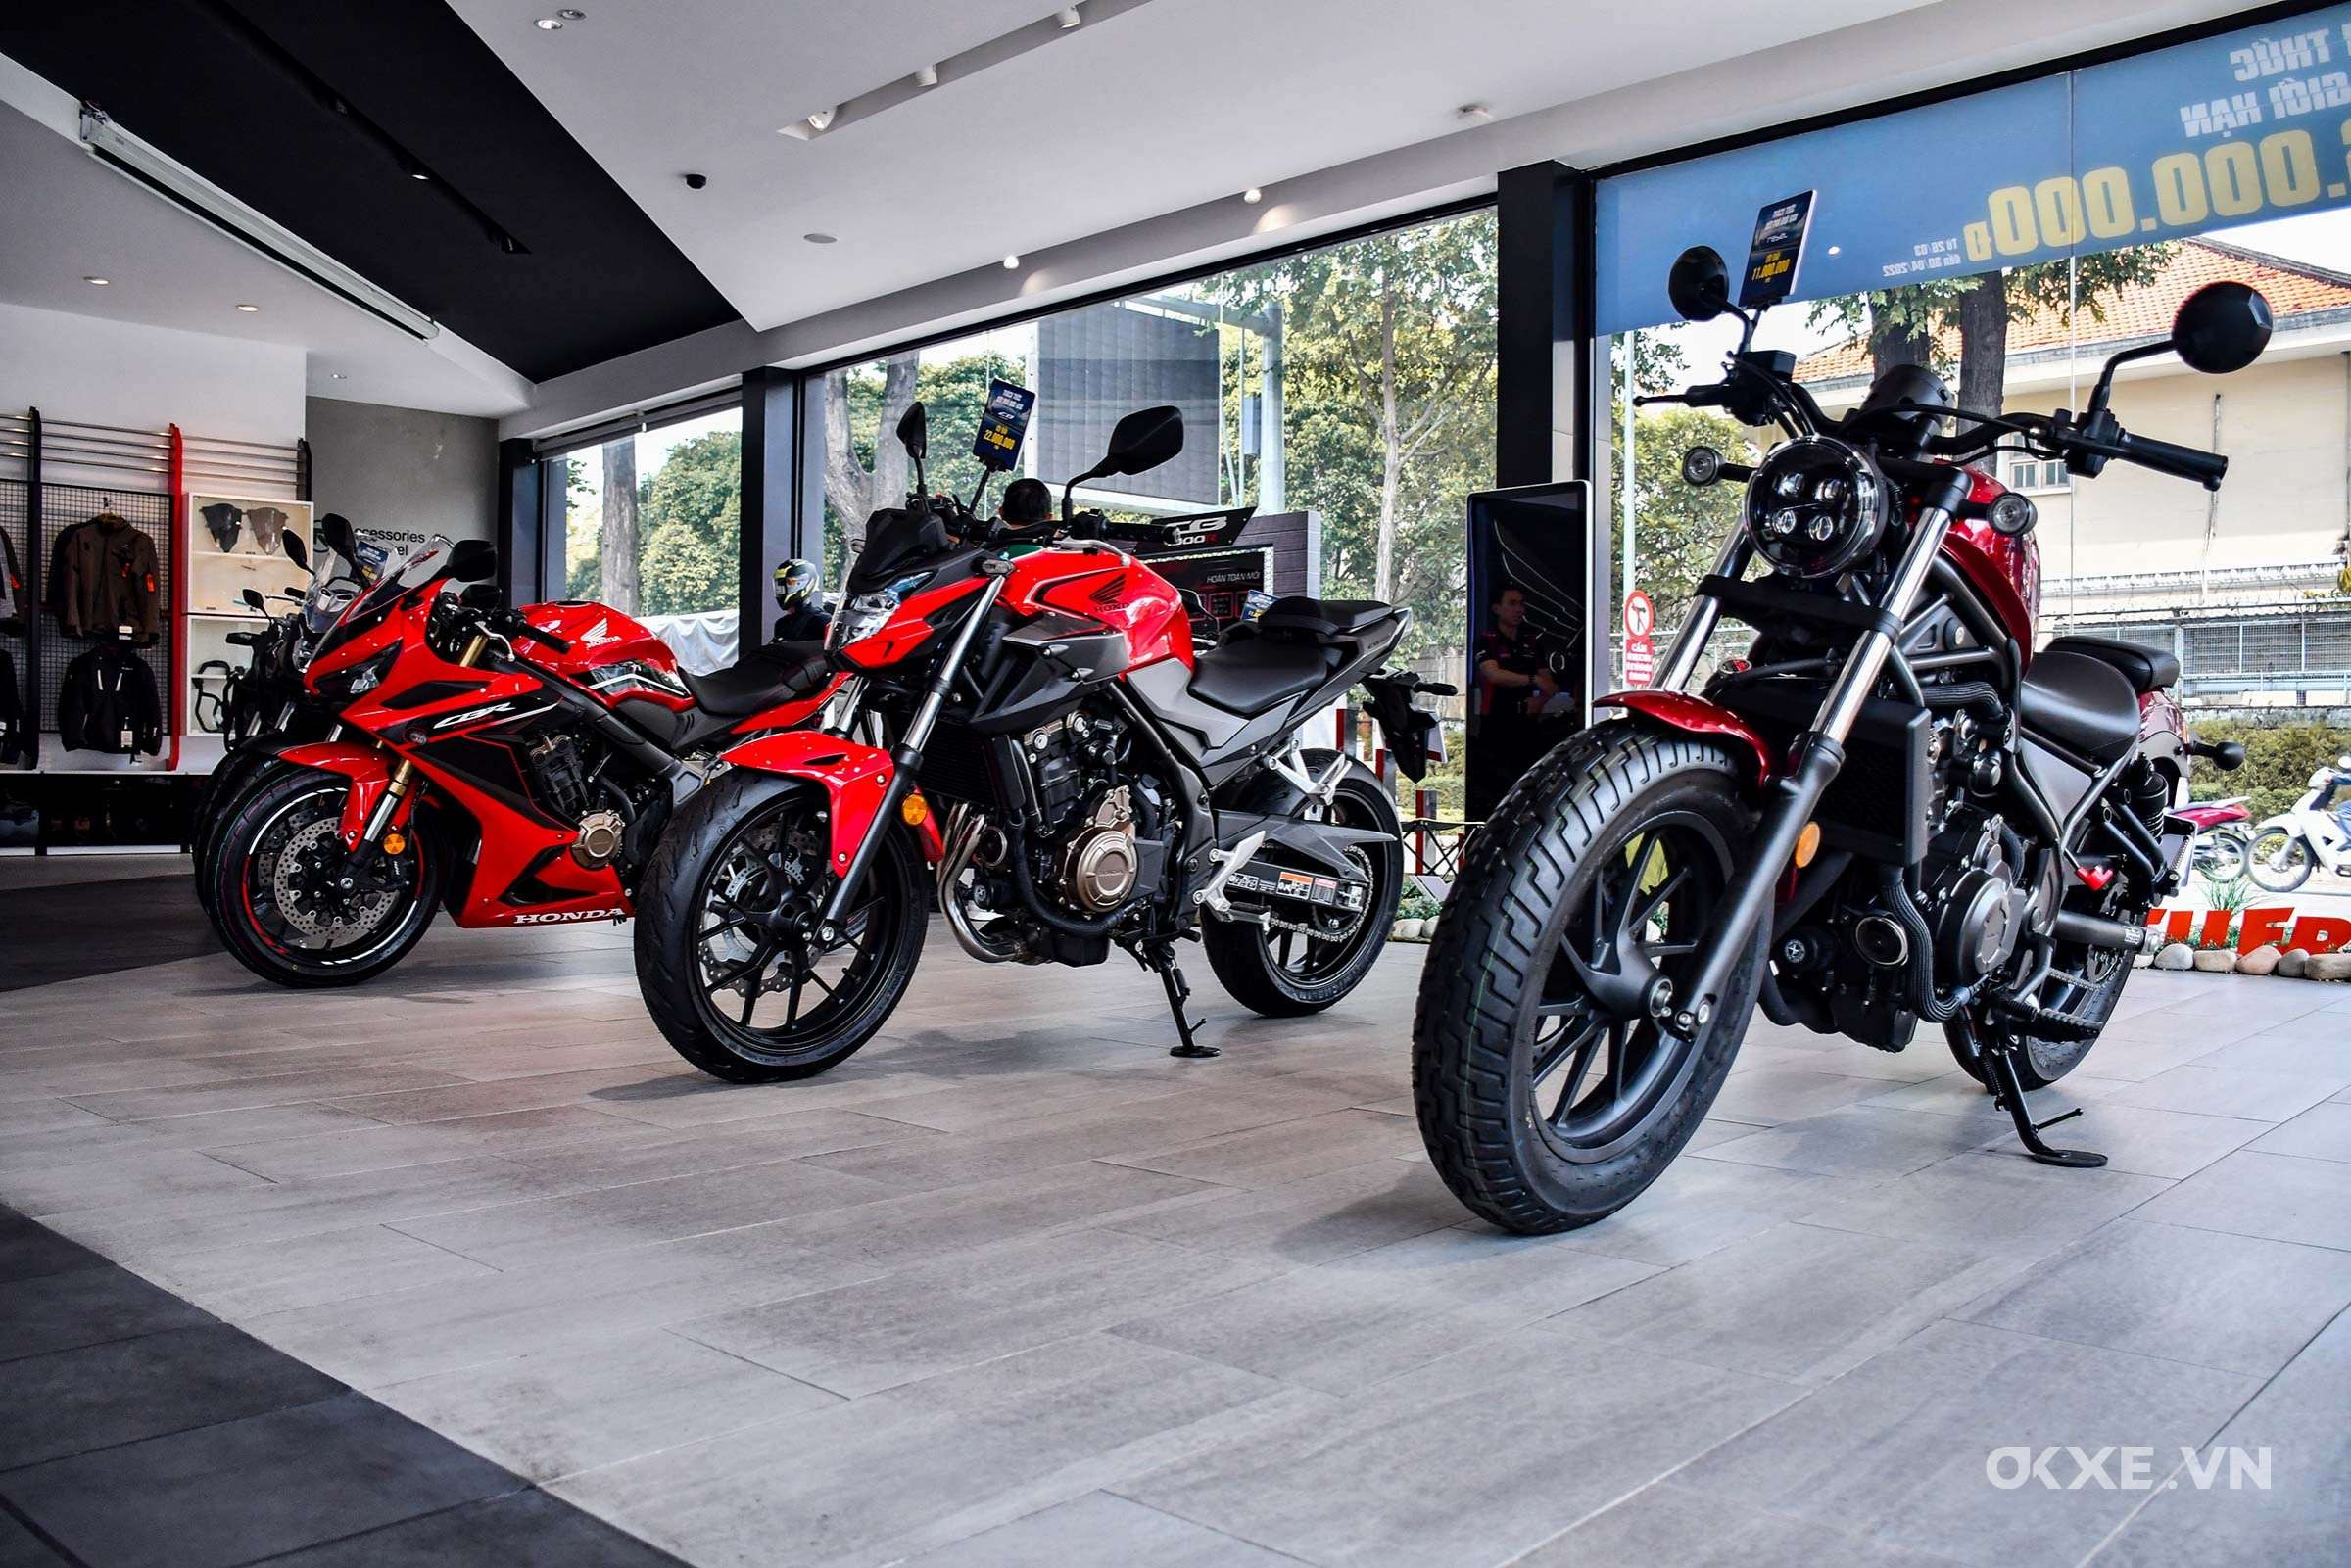 KTM xác nhận sẽ có 5 mẫu mô tô 500cc trang bị động cơ xilanh đôi   Motosaigon